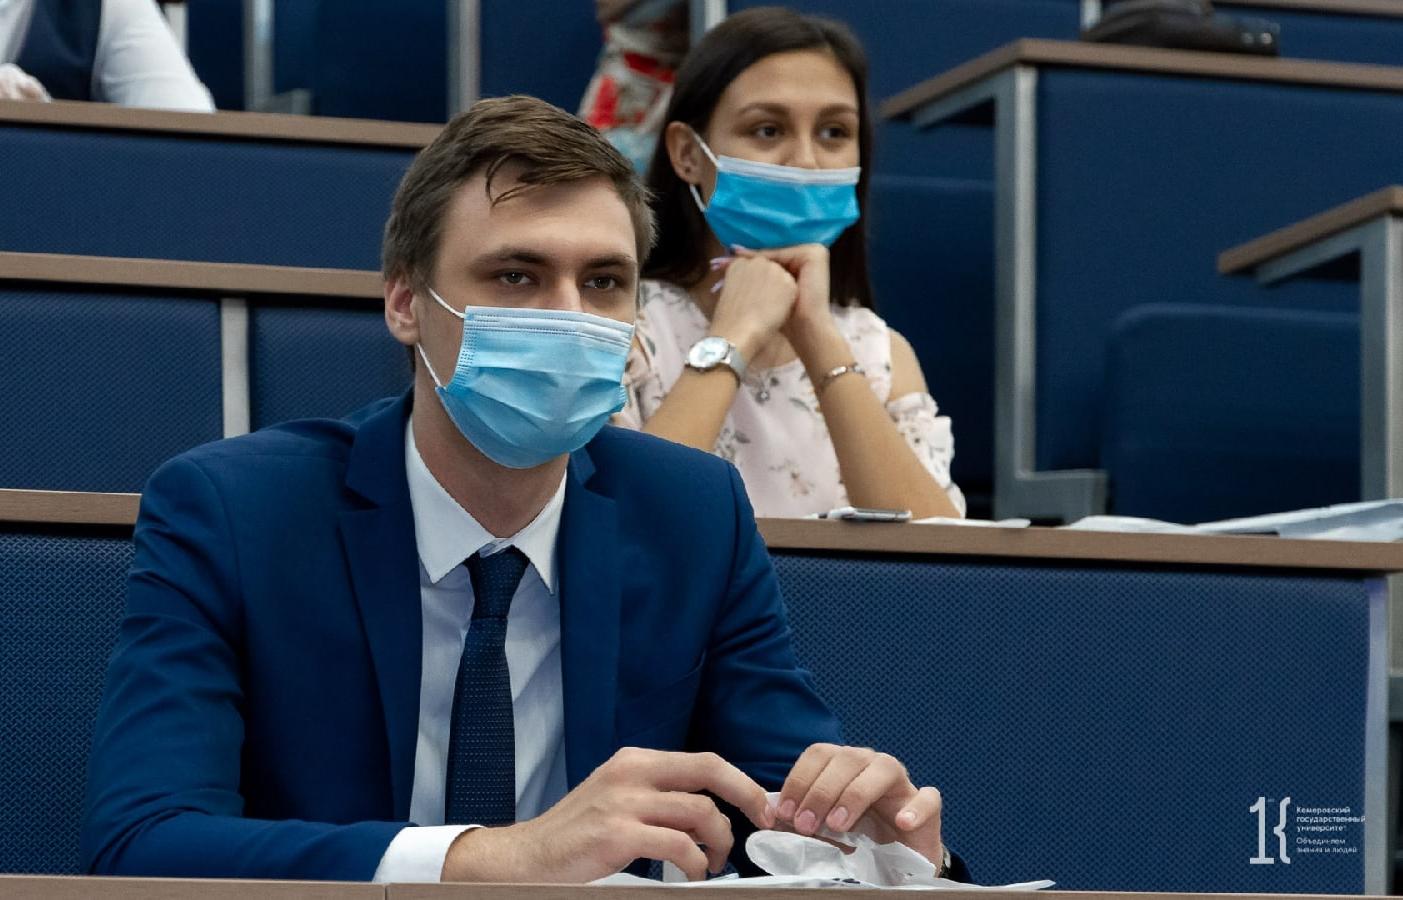 Вузы России ограничивают посещение для студентов без прививок 